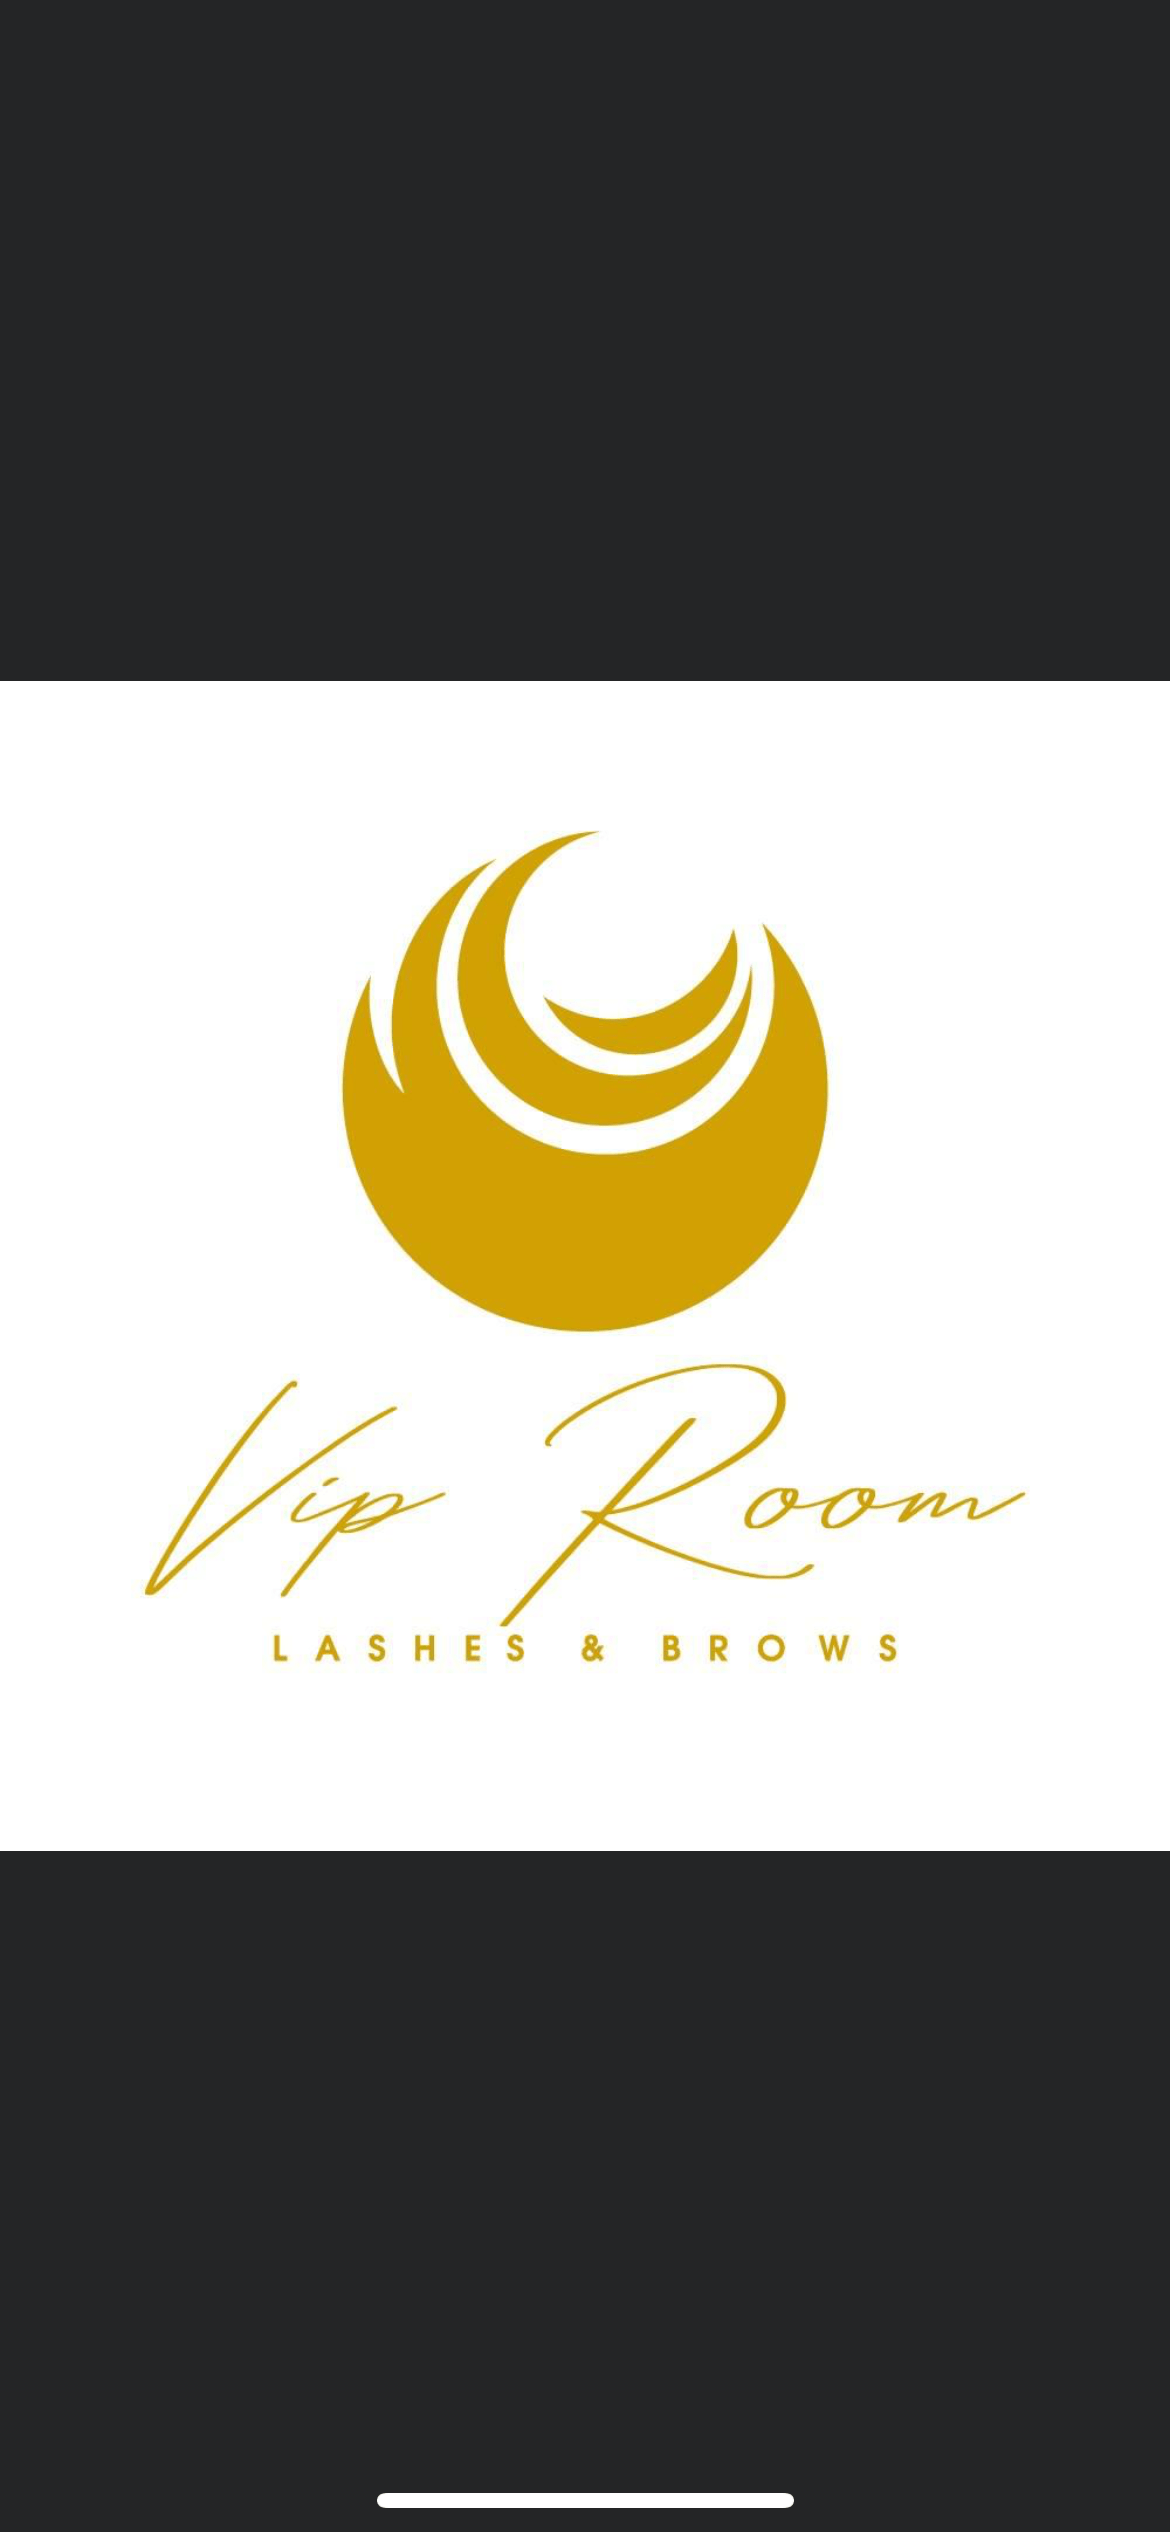 Vio room lashes & brows